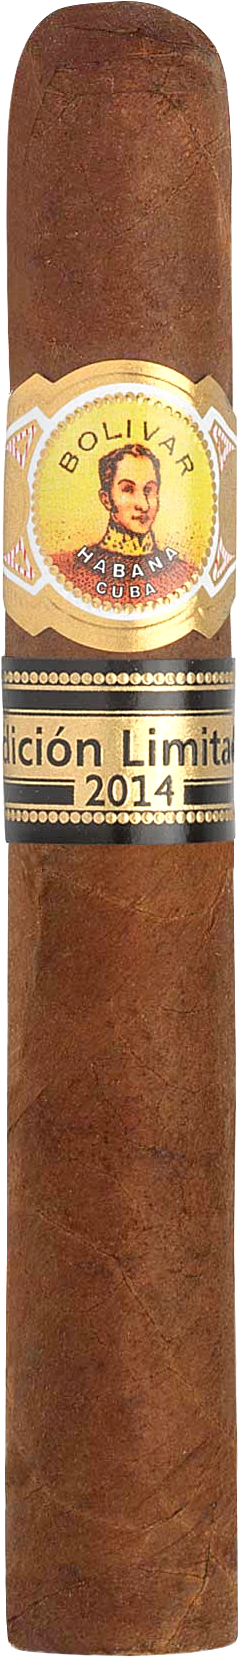 Bolivar Super Coronas Edición Limitada Año 2014